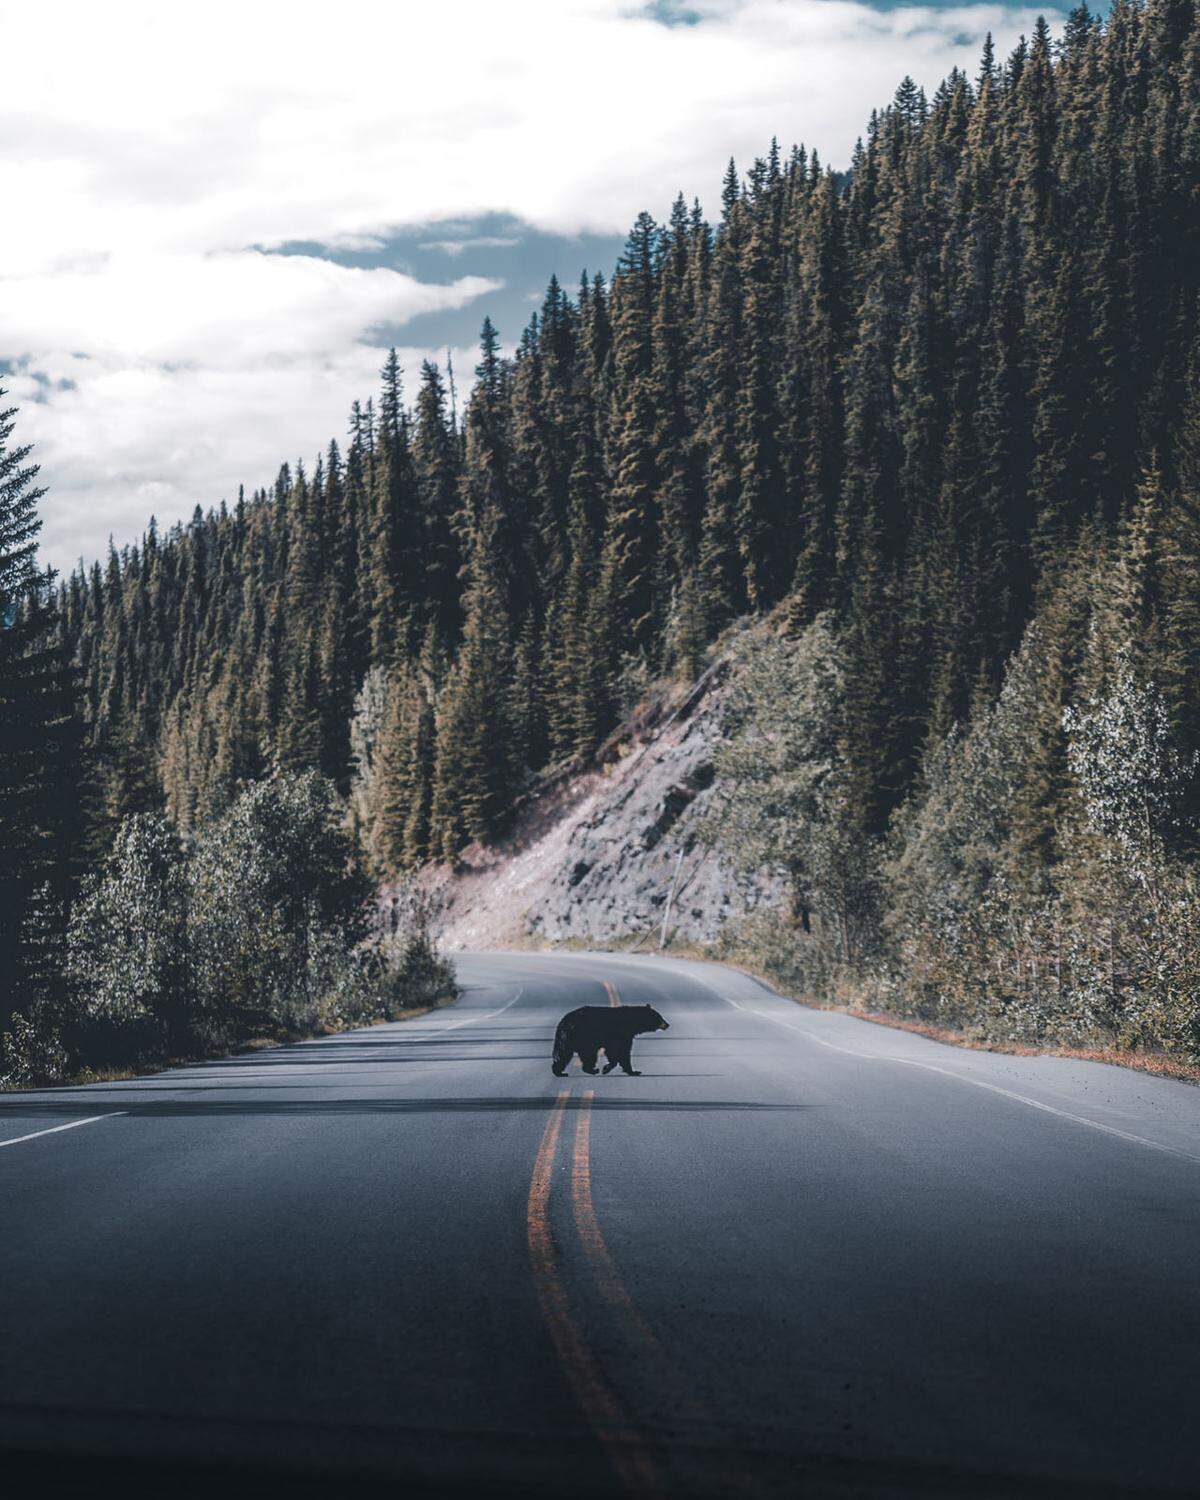 Ebenso dieser Bär in Kanada. "Viel kanadischer geht es nicht", schreibt der Fotograf.